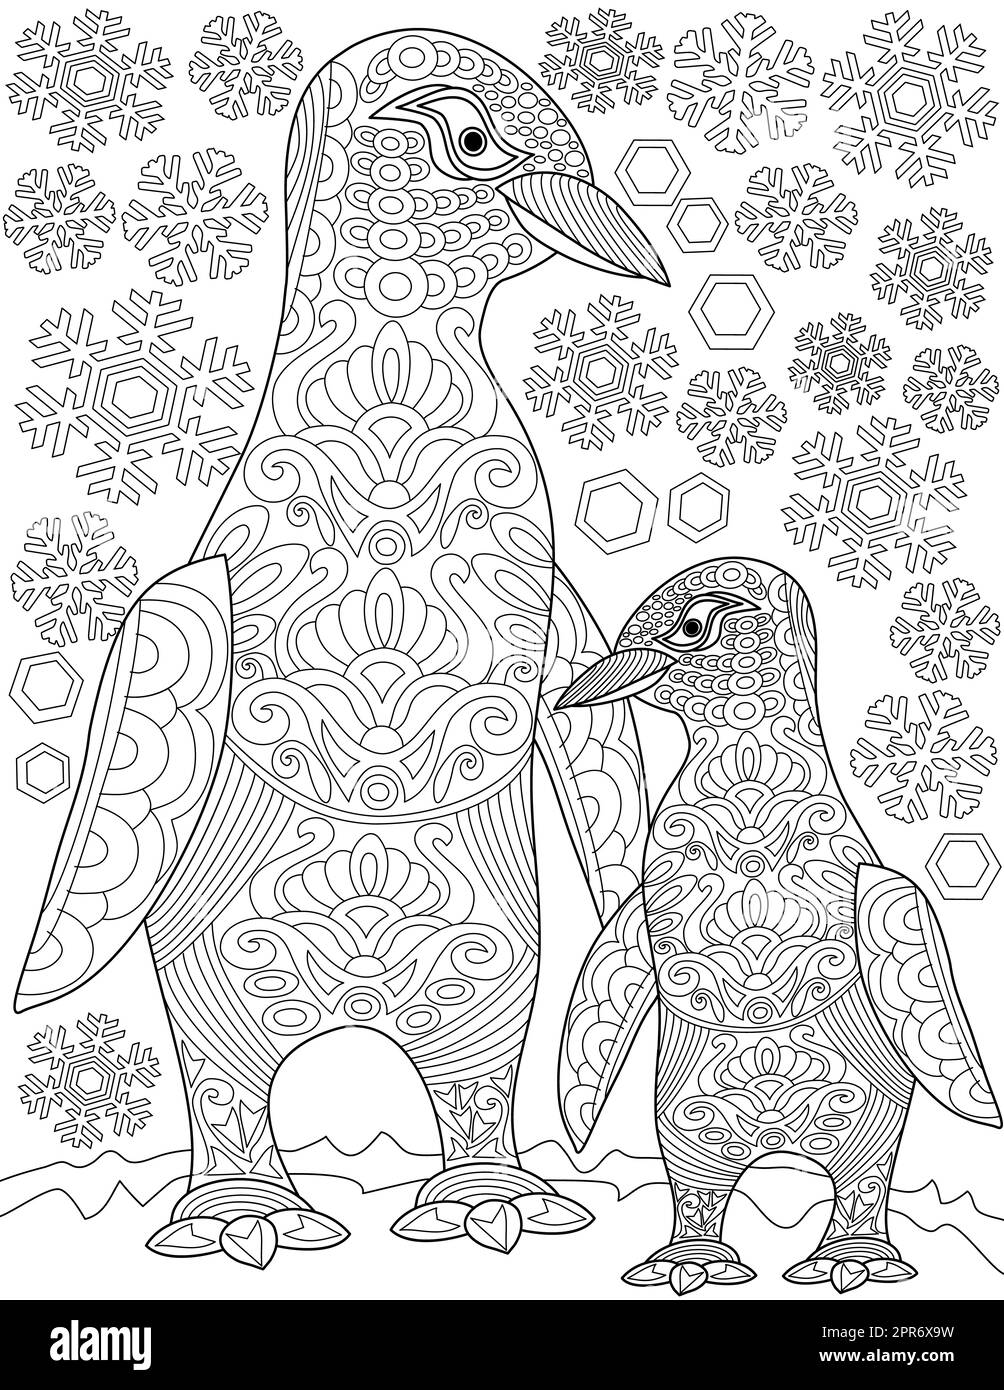 Malbuchseite Mit Wandelnden Mutter-Kind-Pinguinen Mit Schneeflocken Im Hintergrund. Das Laken Wird Mit Zwei Happy Sea Birds Nebeneinander Gefärbt. Stockfoto